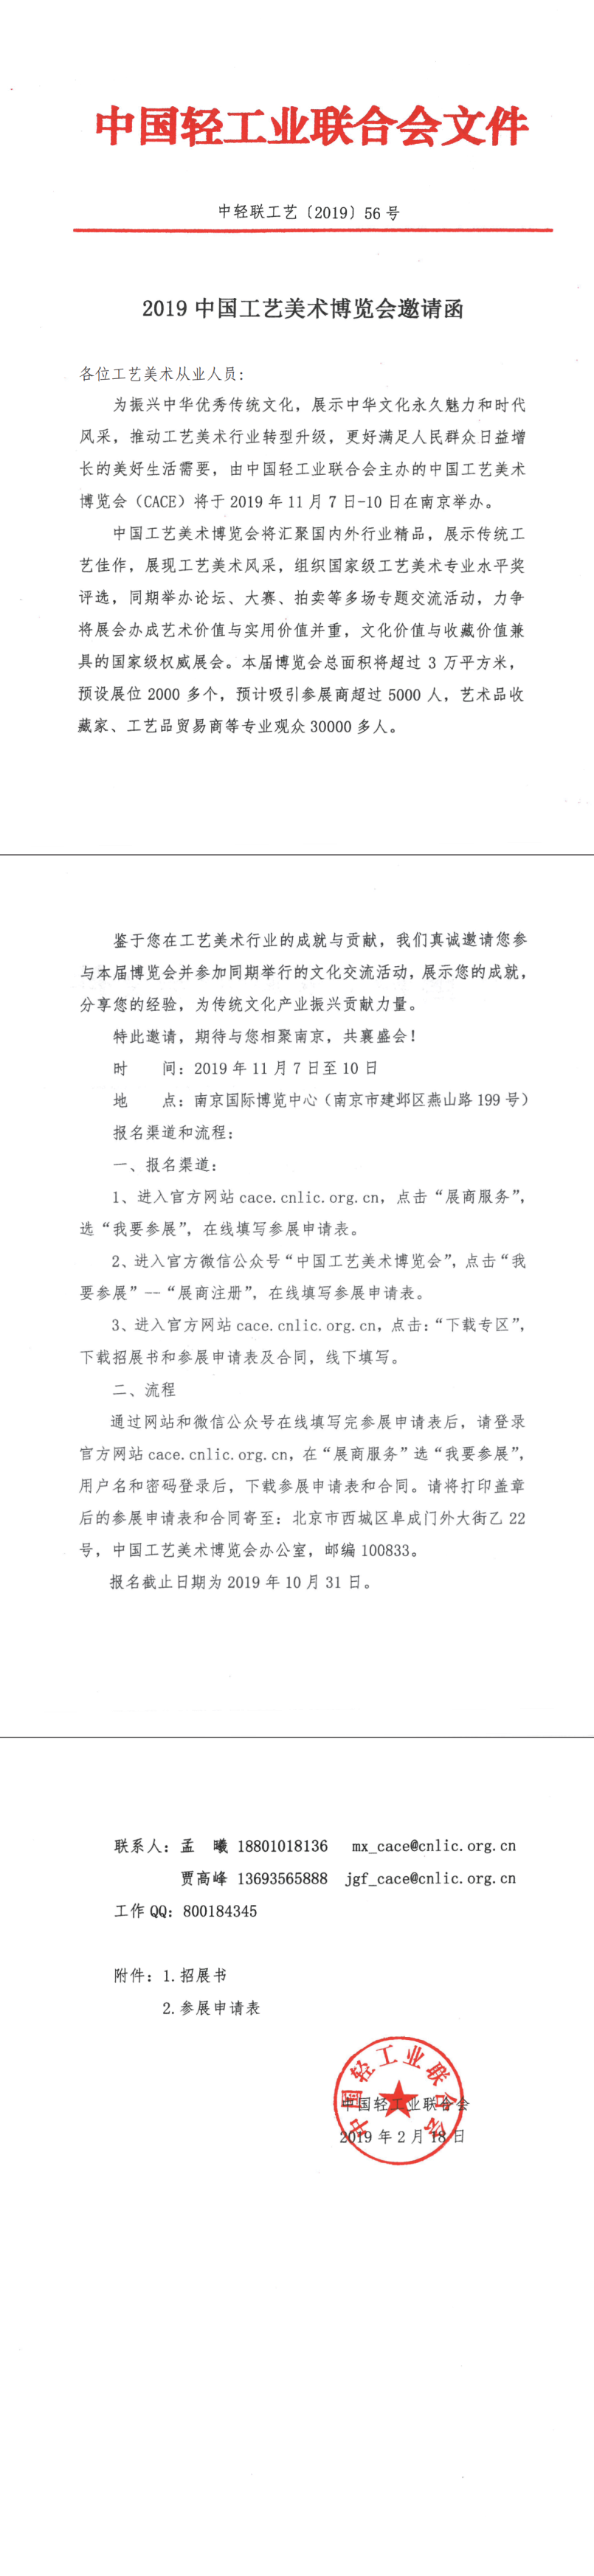 关于中国工艺美术博览会的邀请函(1)_1.png